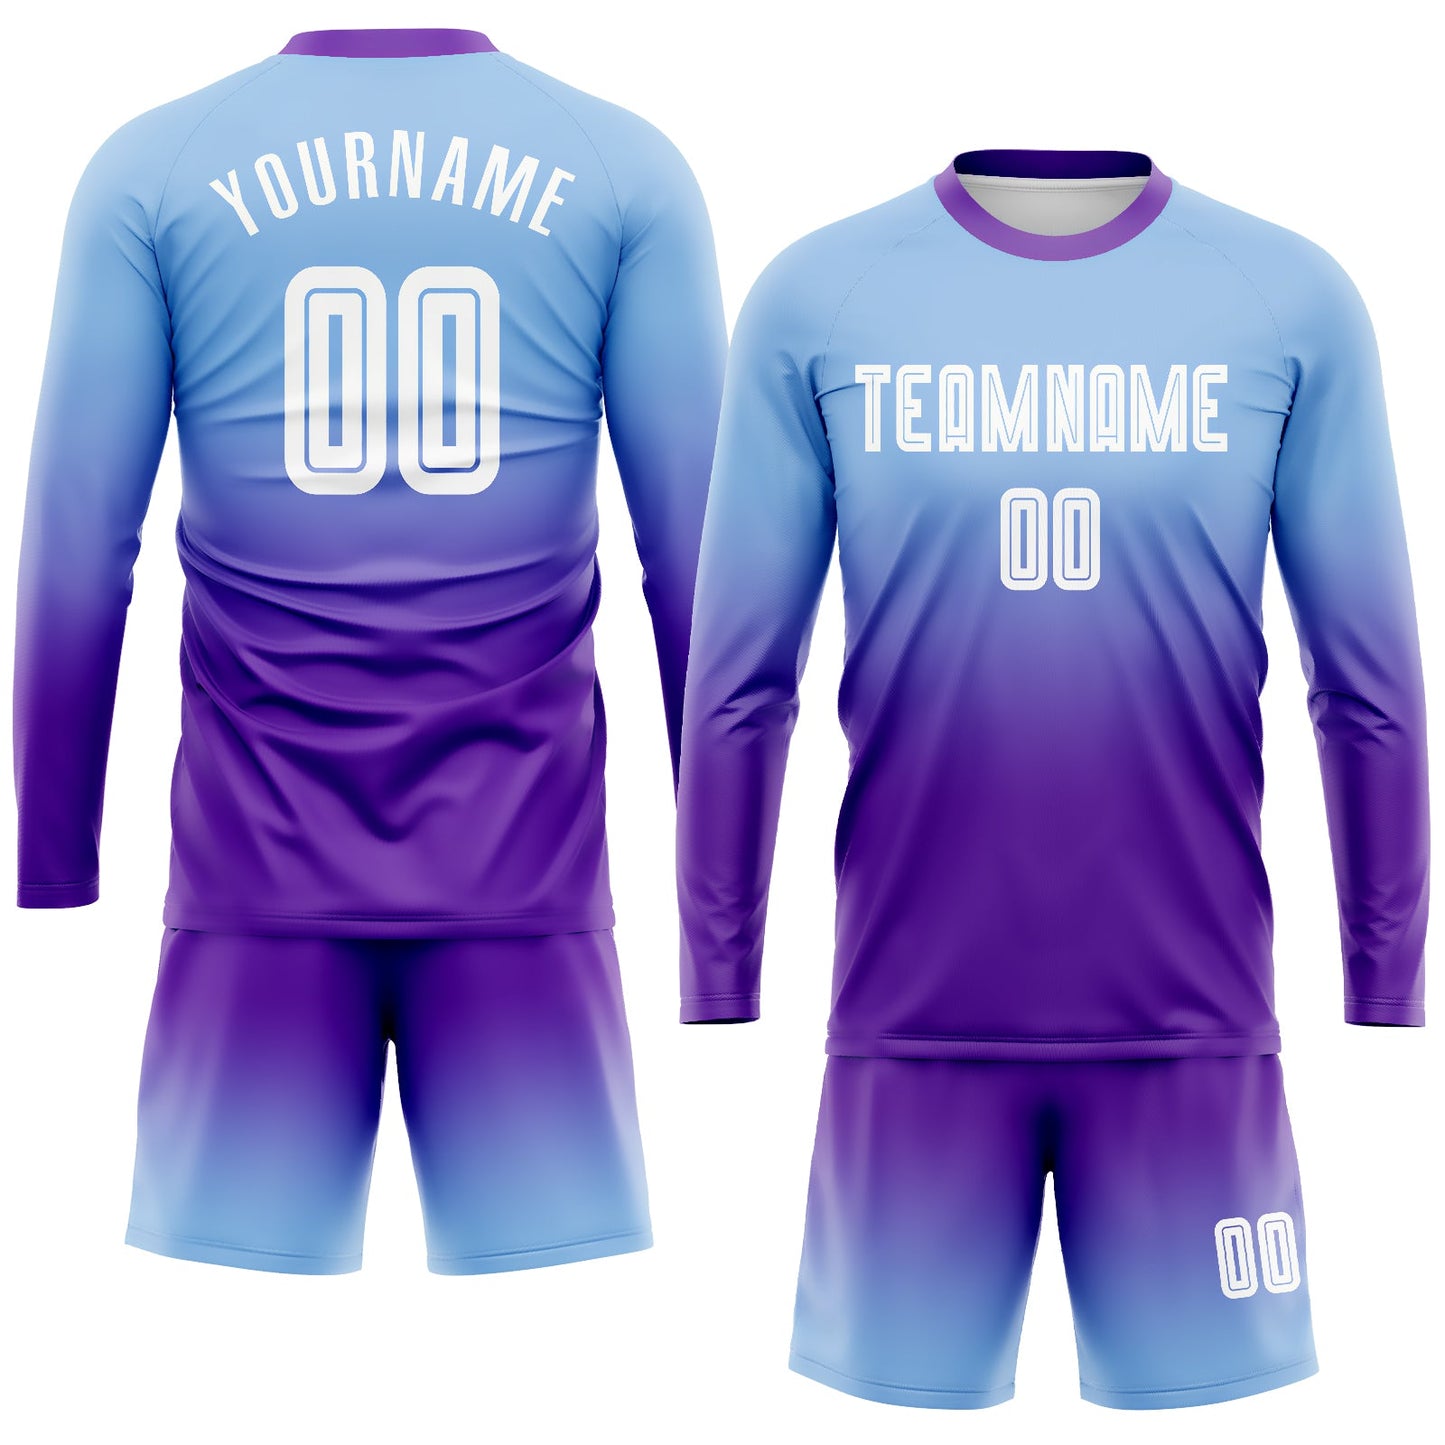 Maillot d'uniforme de football à manches longues, bleu clair, blanc et violet, personnalisé, à la mode, fondu, par Sublimation